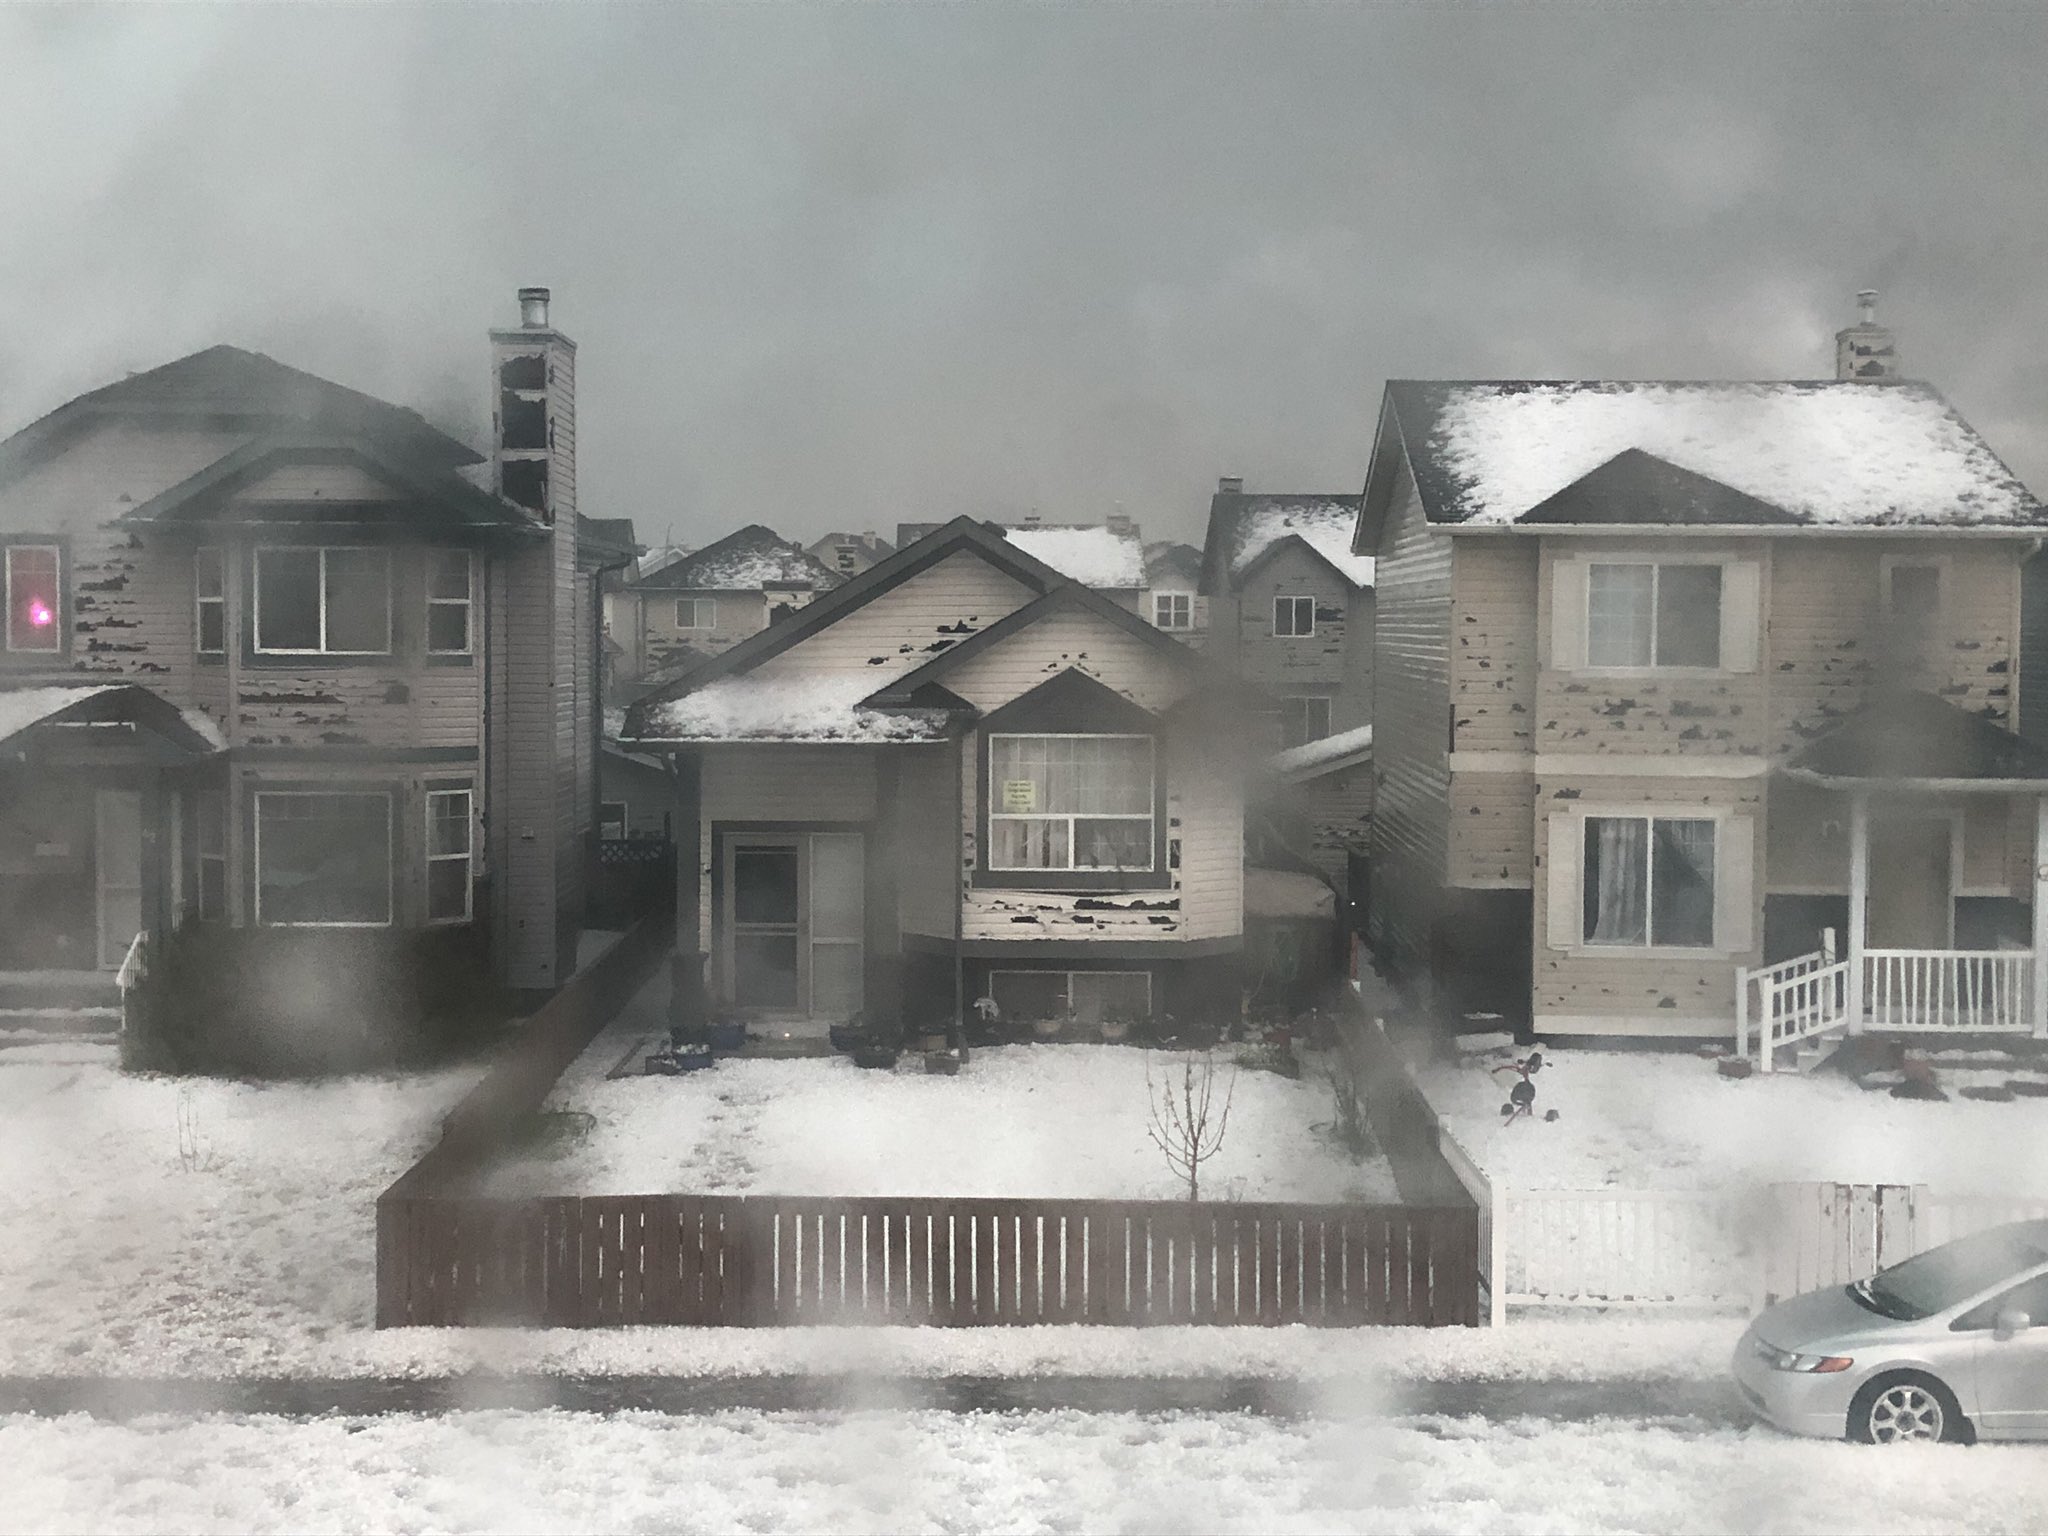 Lluvia de granizo en Canadá causó estragos en viviendas y carros (VIDEOS)